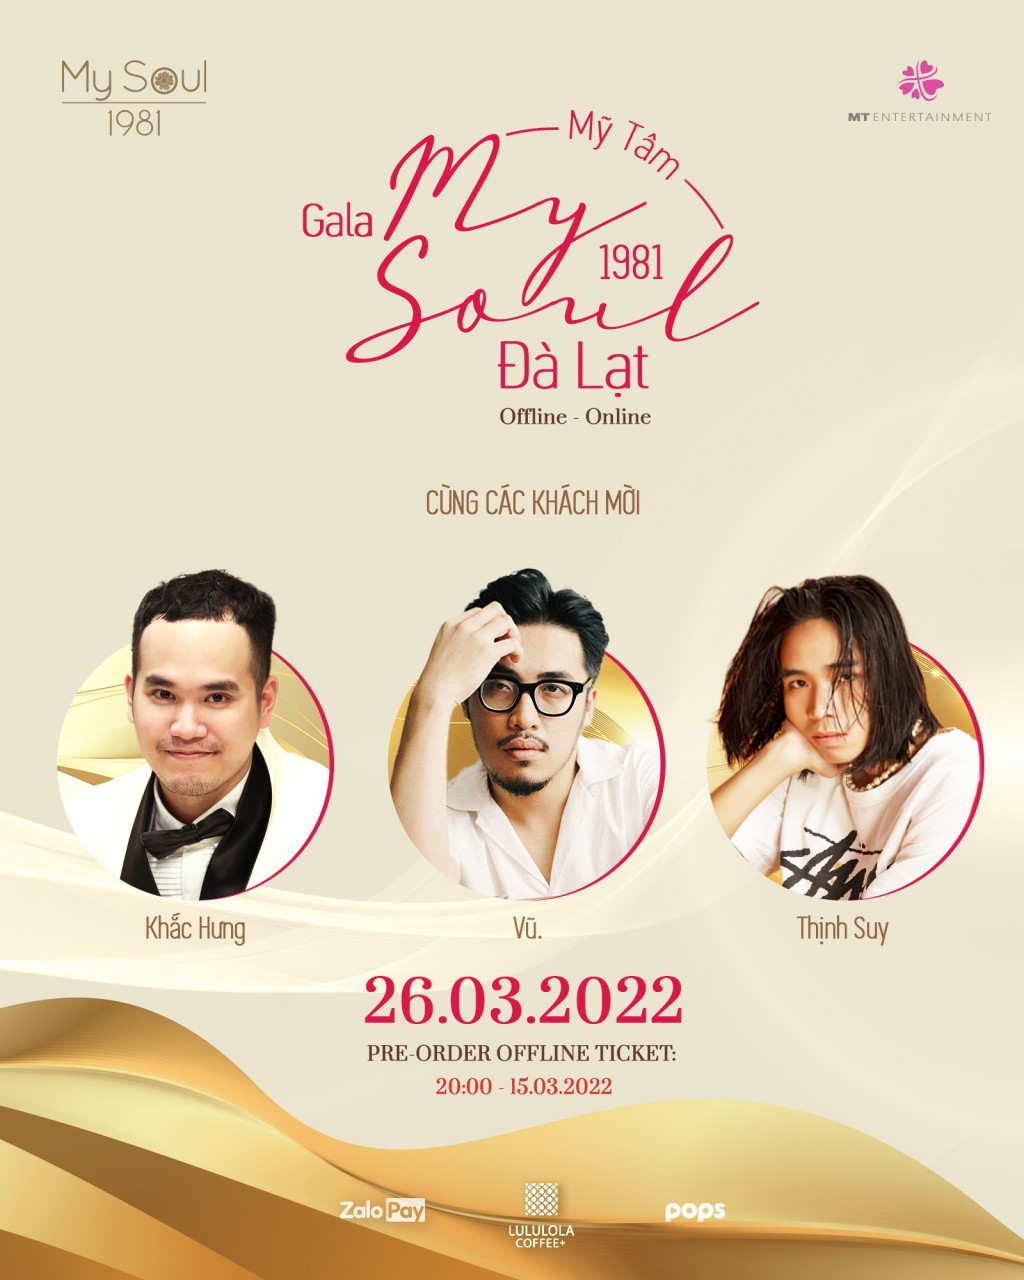 Bên cạnh đó, nữ ca sĩ cũng đã công bố 3 khách mời đặc biệt sẽ góp mặt trong show diễn ngày 26/03 đó chính là Khắc Hưng, Vũ. và Thịnh Suy.